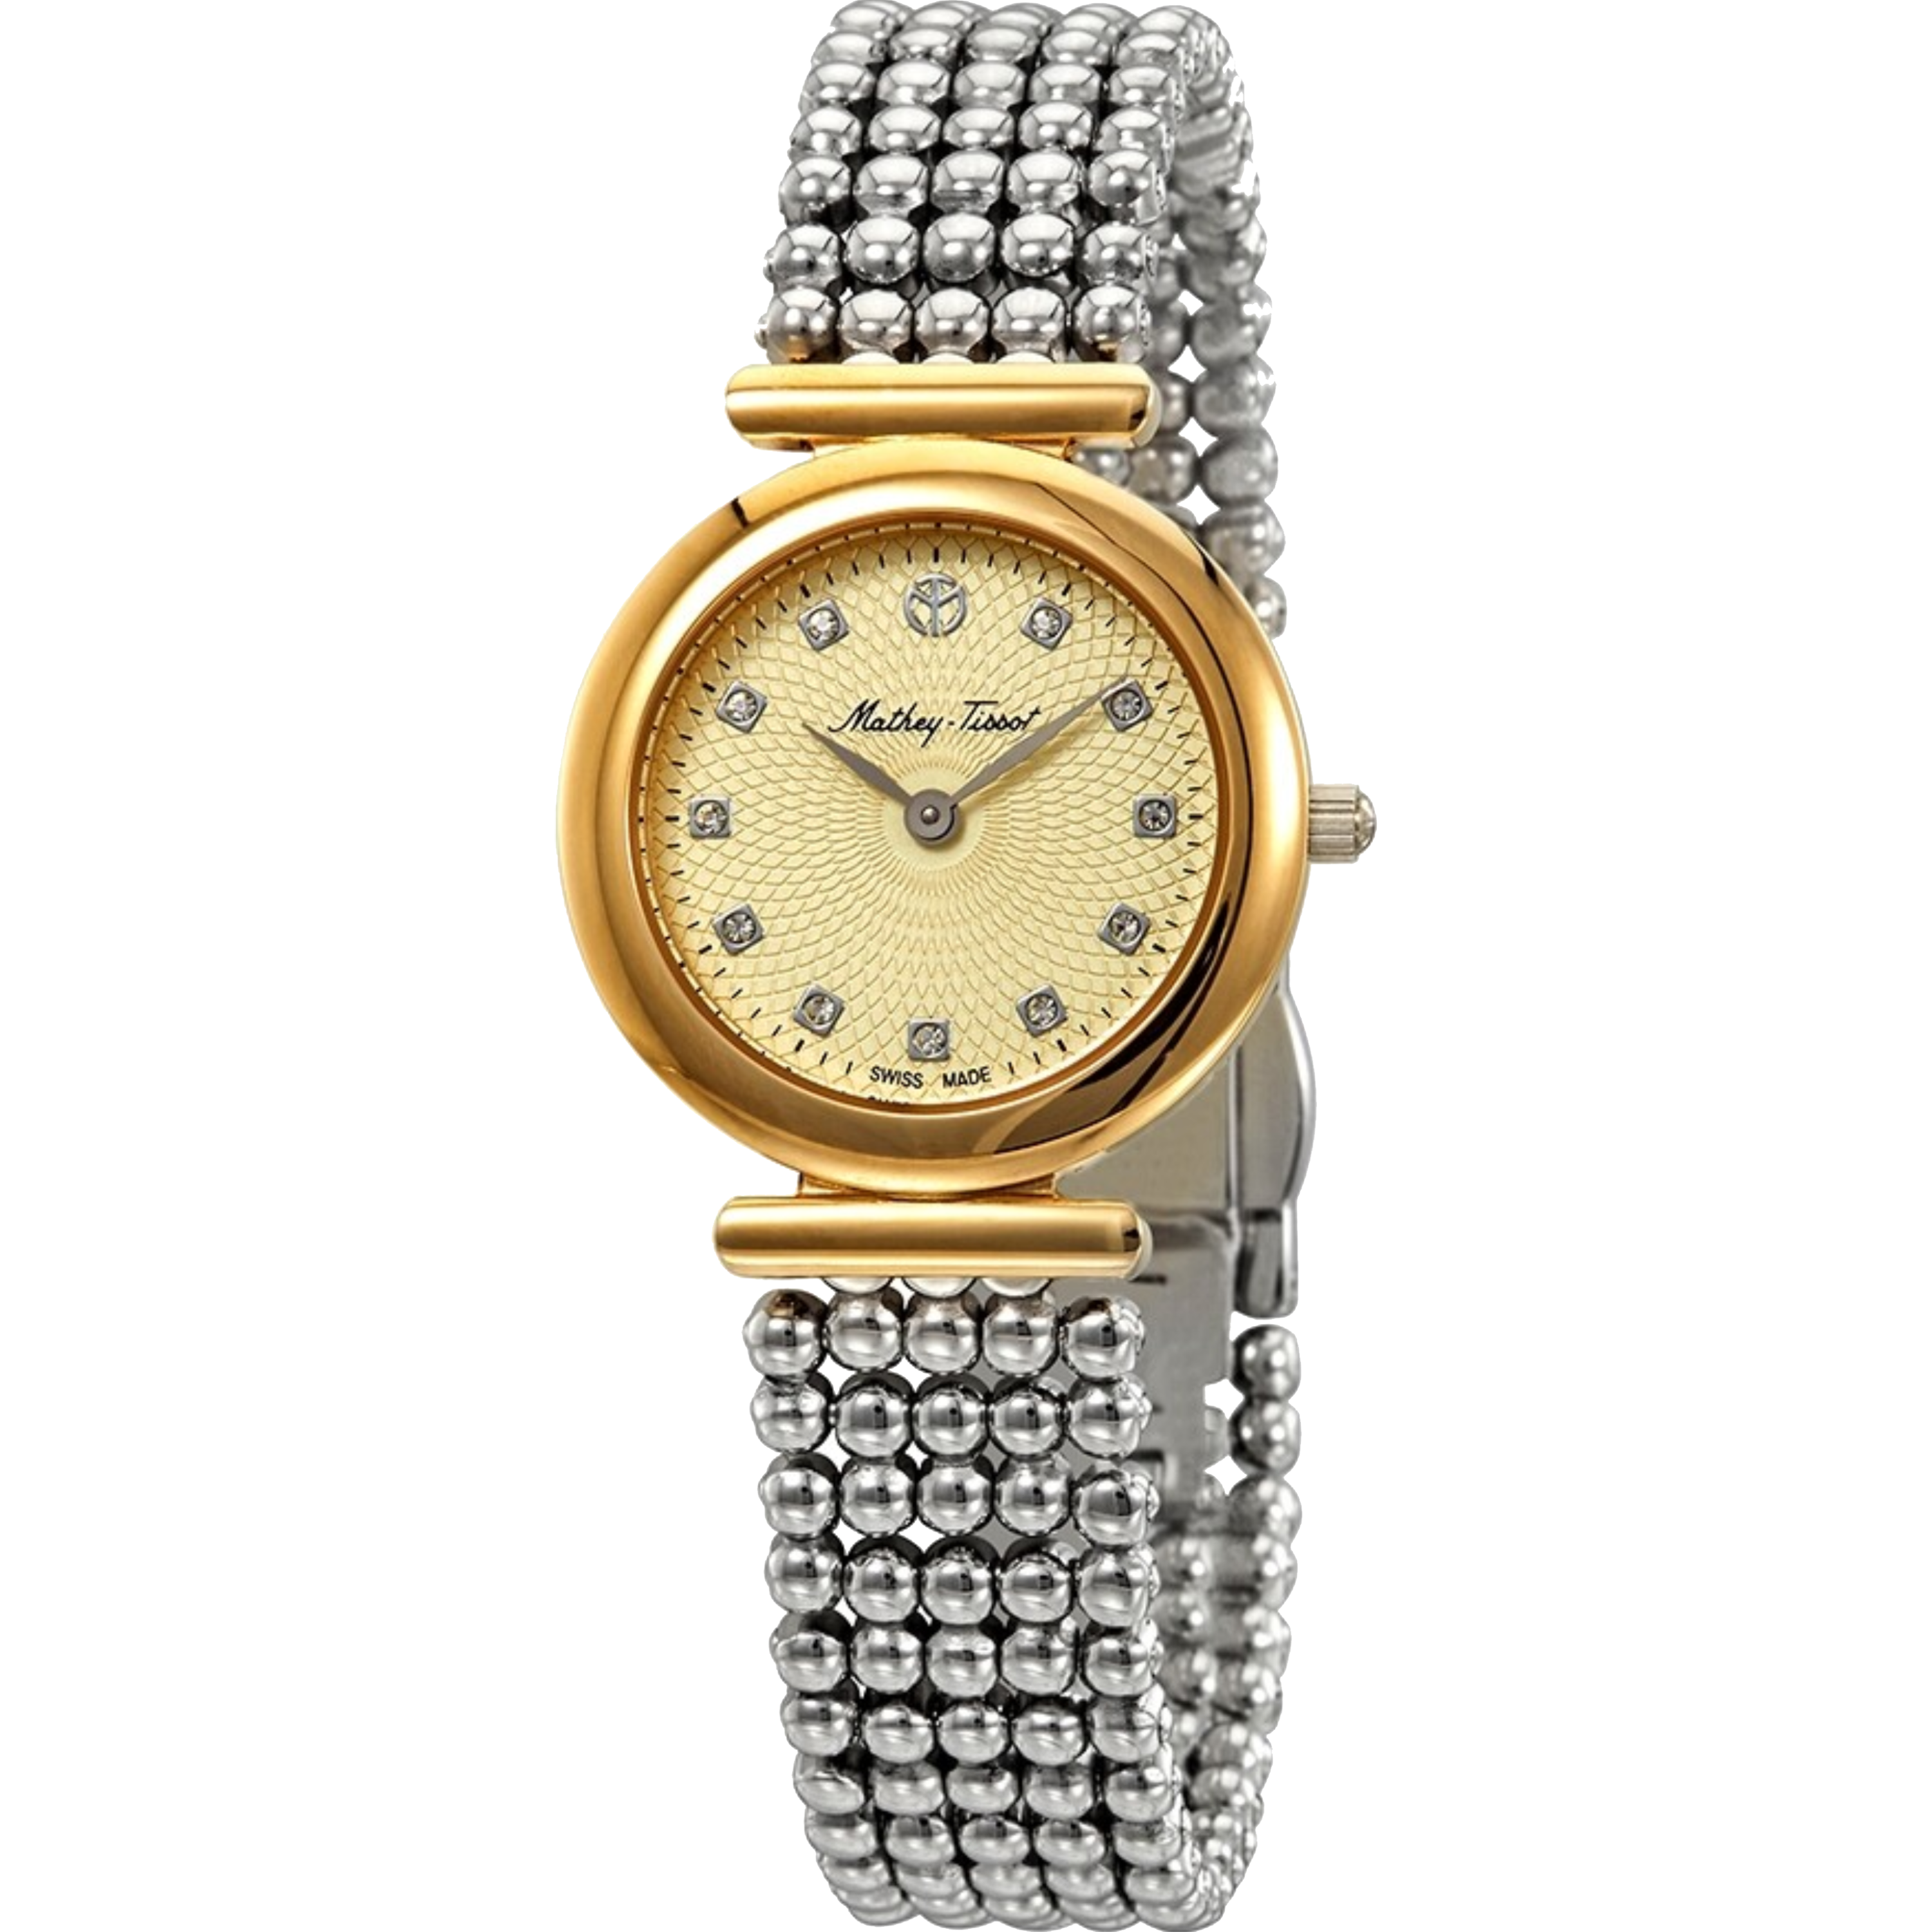 שעון יד לאישה Mathey Tissot D539BDI 28mm צבע כסף/זהב/זכוכית ספיר - אחריות לשנה ע"י היבואן